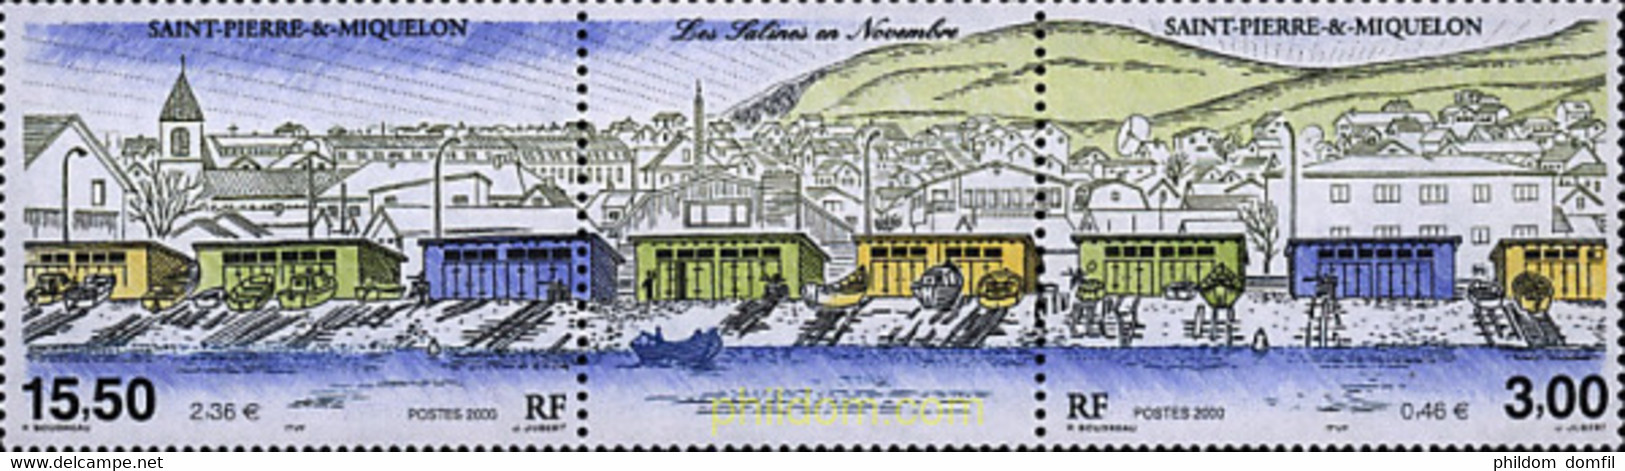 5079 MNH SAN PEDRO Y MIQUELON 2000 LAS SALINAS EN NOVIEMBRE - Used Stamps